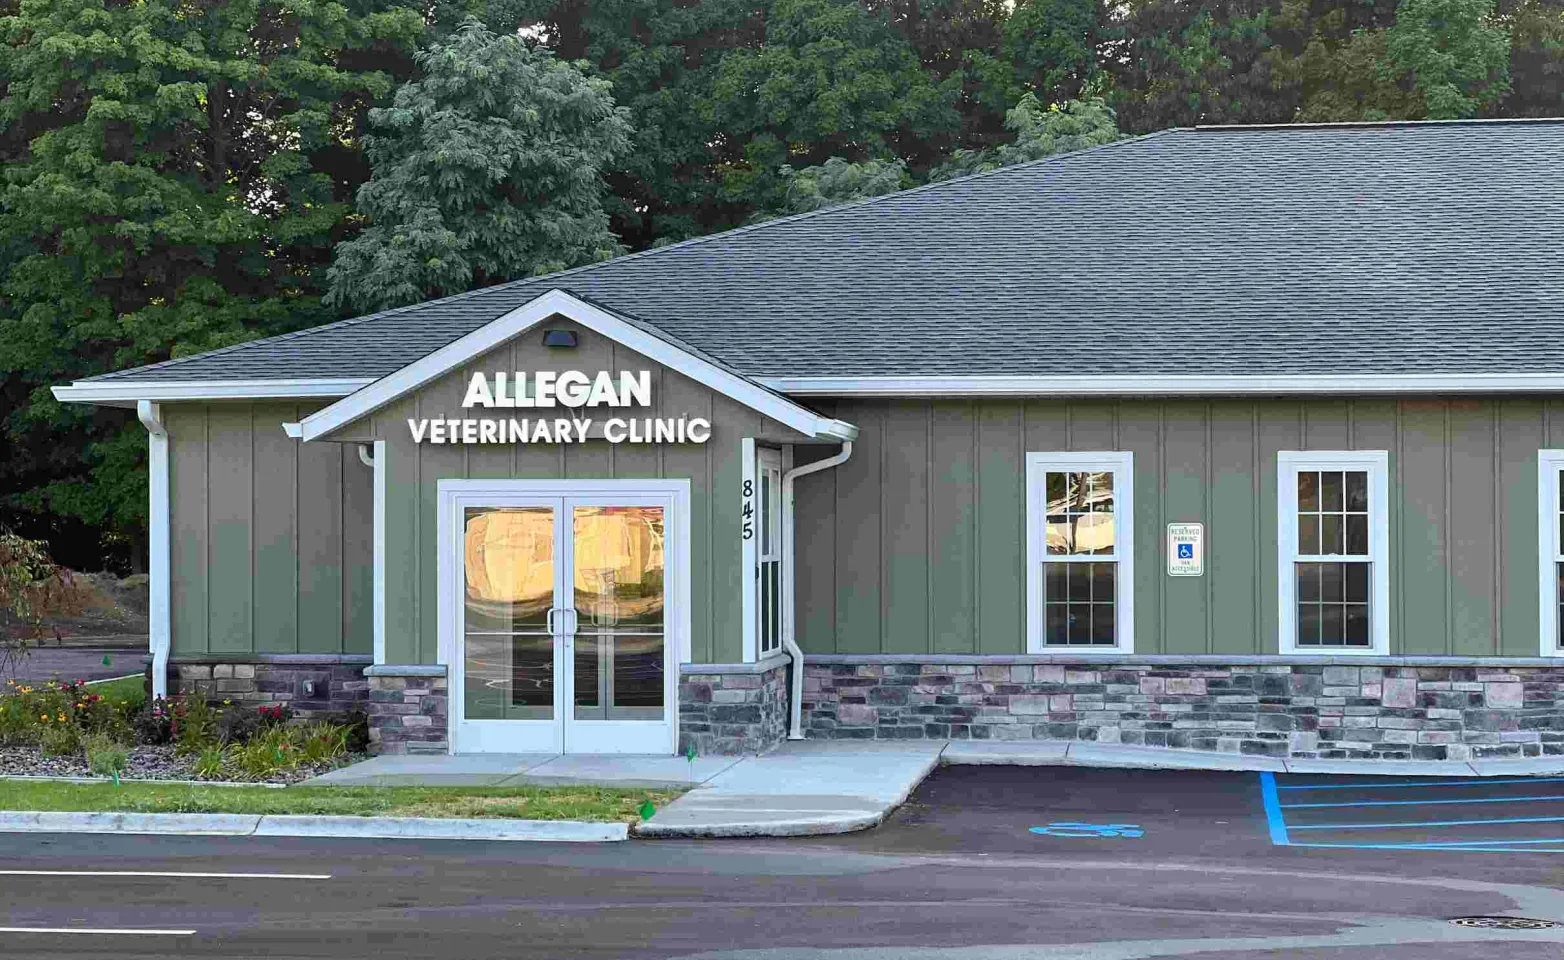 Allegan Veterinary Clinic exterior.